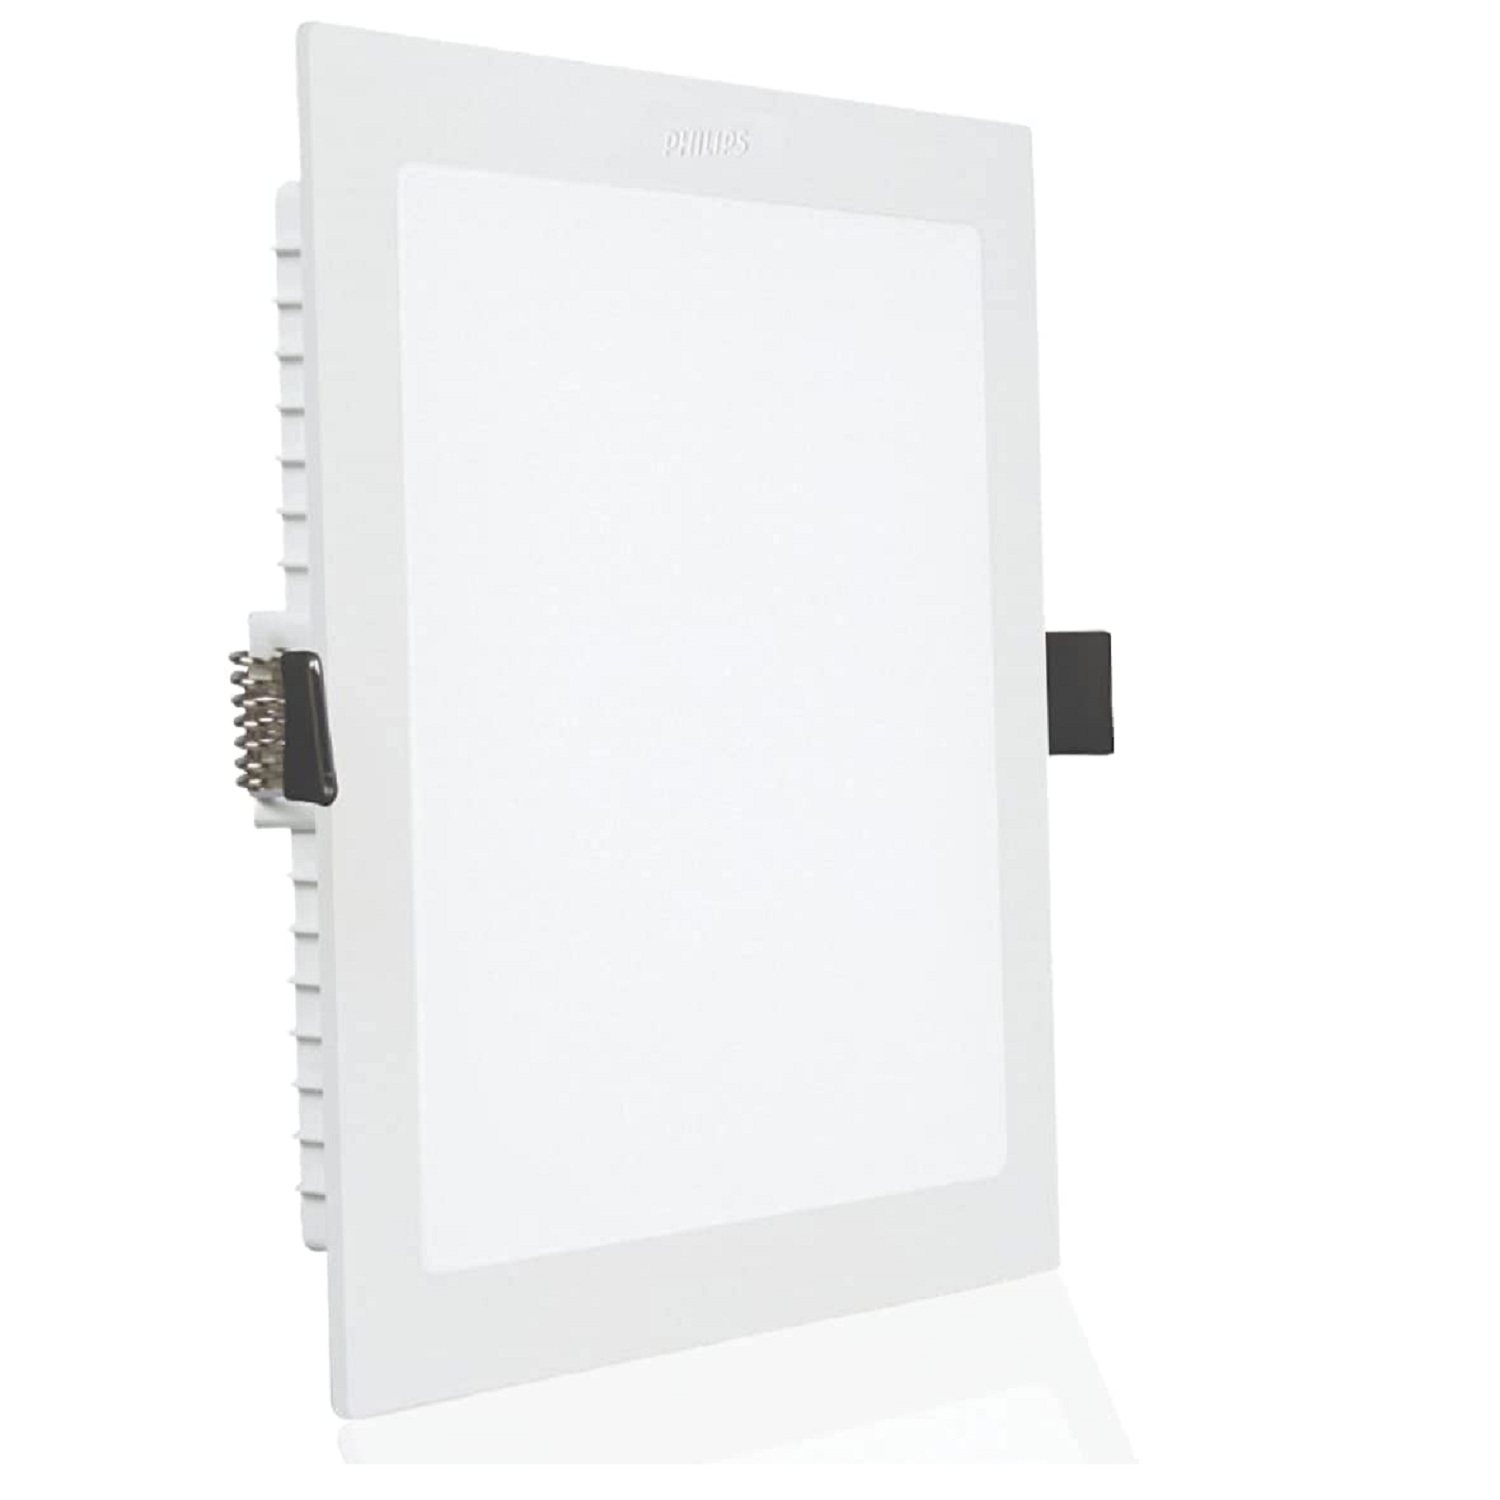 PHILIPS 8-watt Square LED Downlight 3-in-1  Recessed LED Downlight  LED Ceiling Panel  Light for Hom